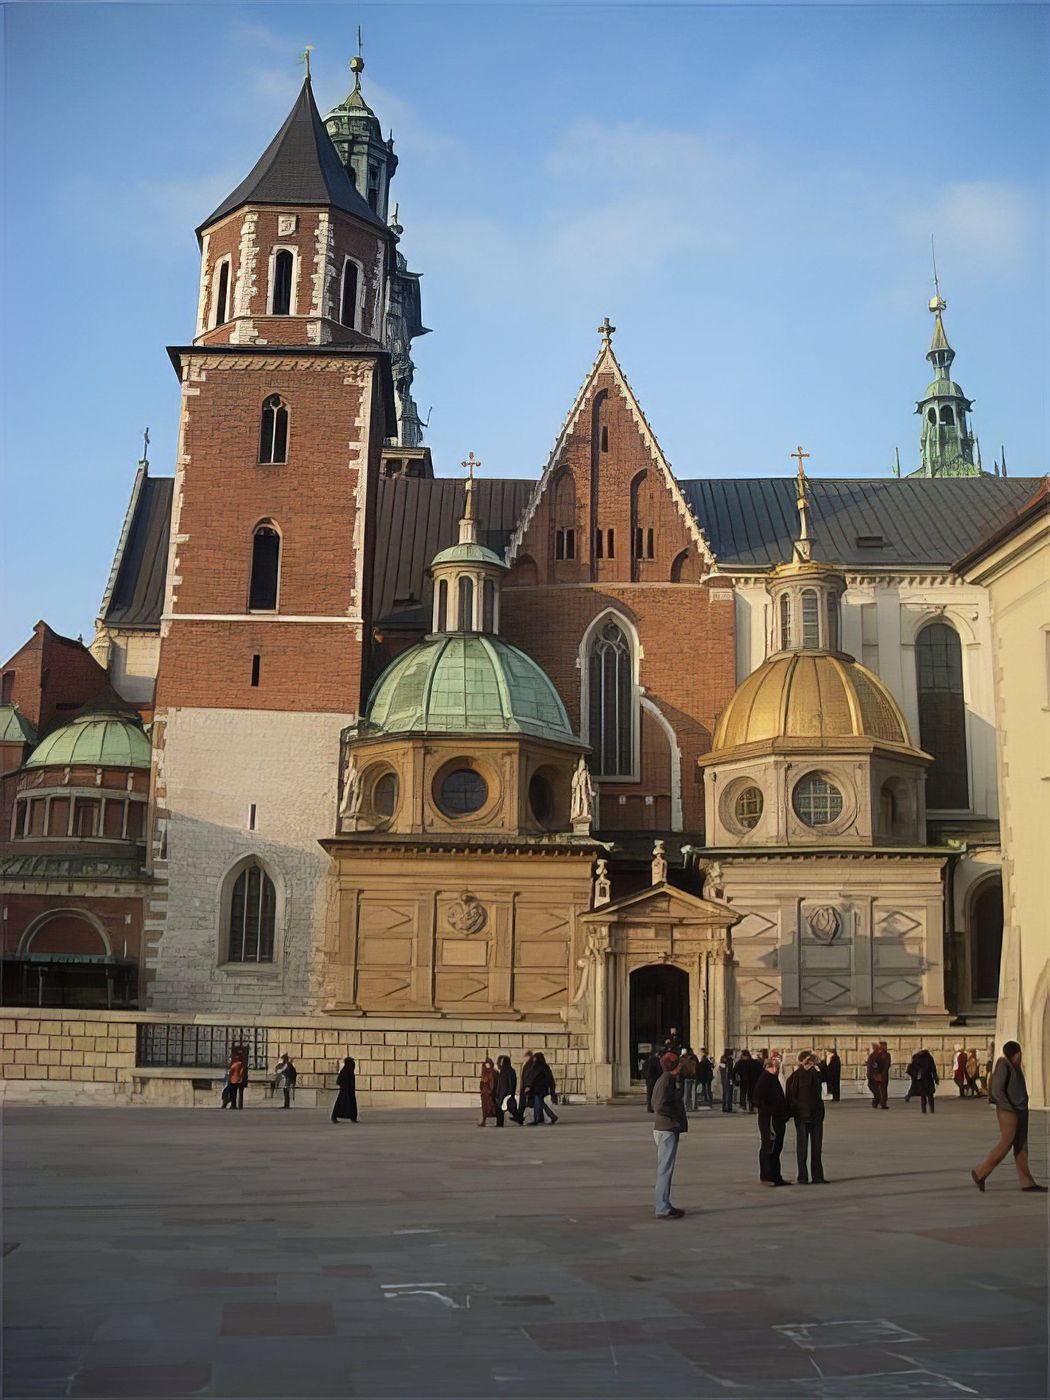 Katedra na Wawelu (Cathédrale)